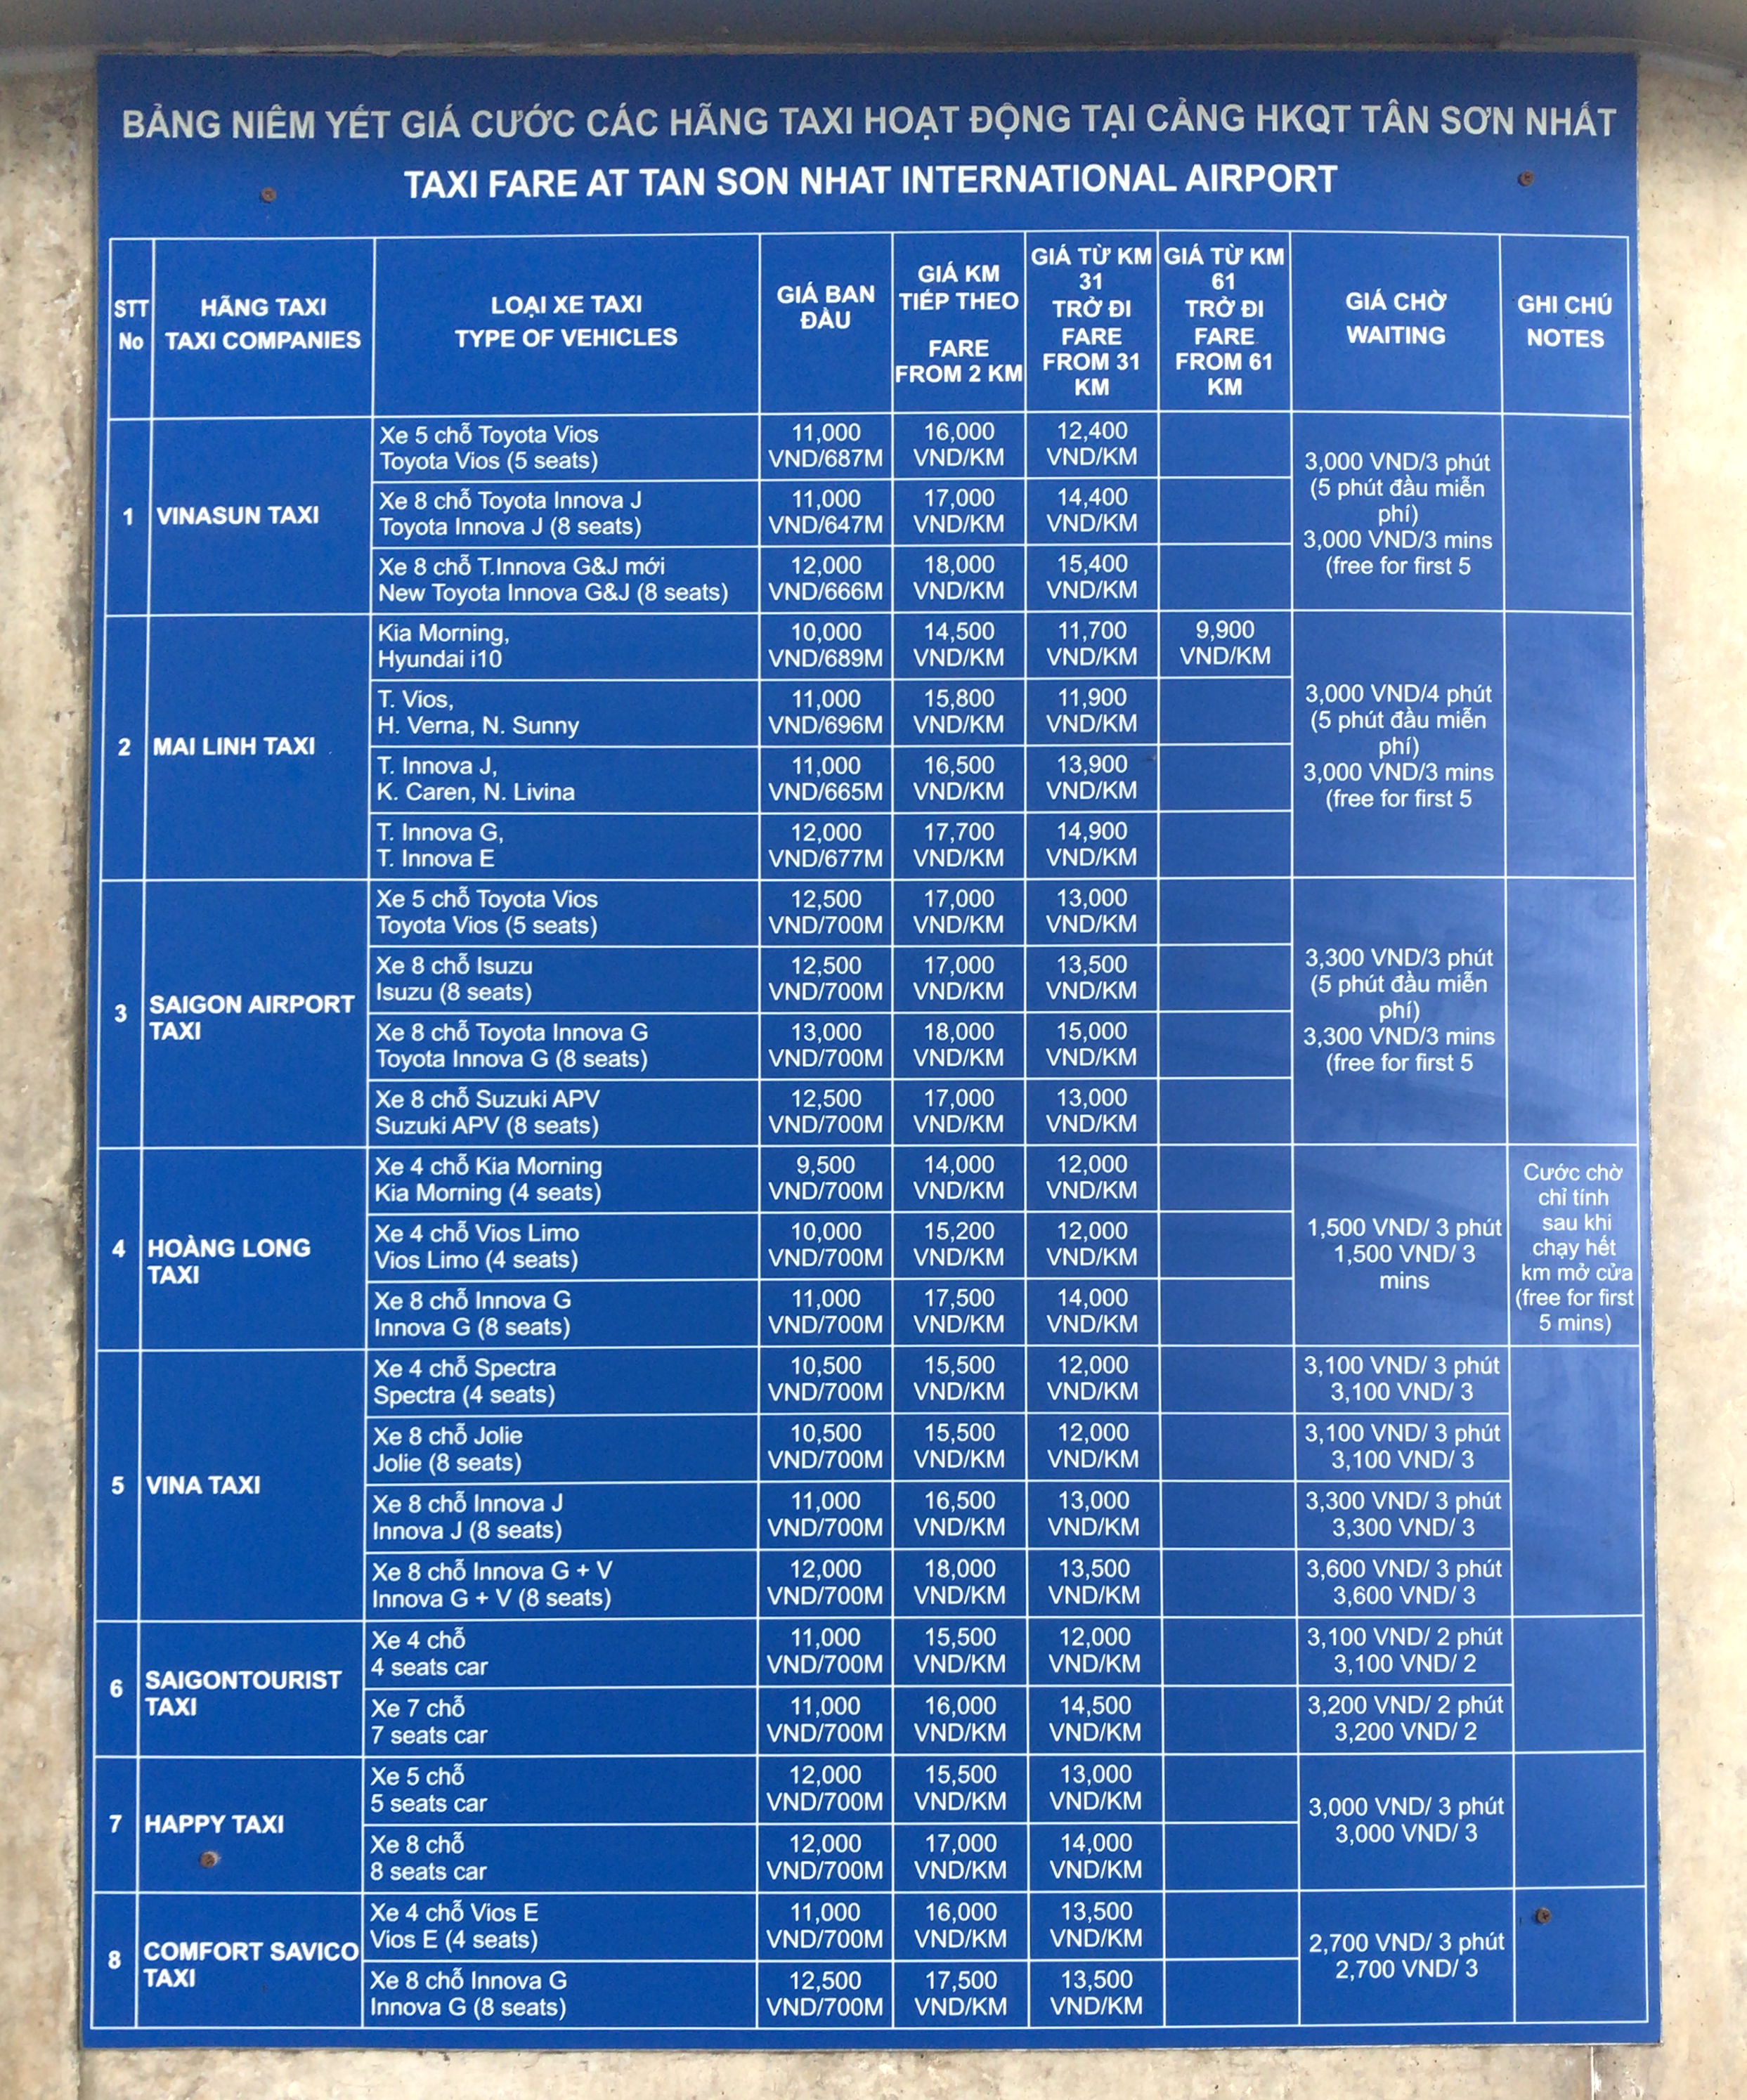 タンソンニャット空港のタクシー運賃表